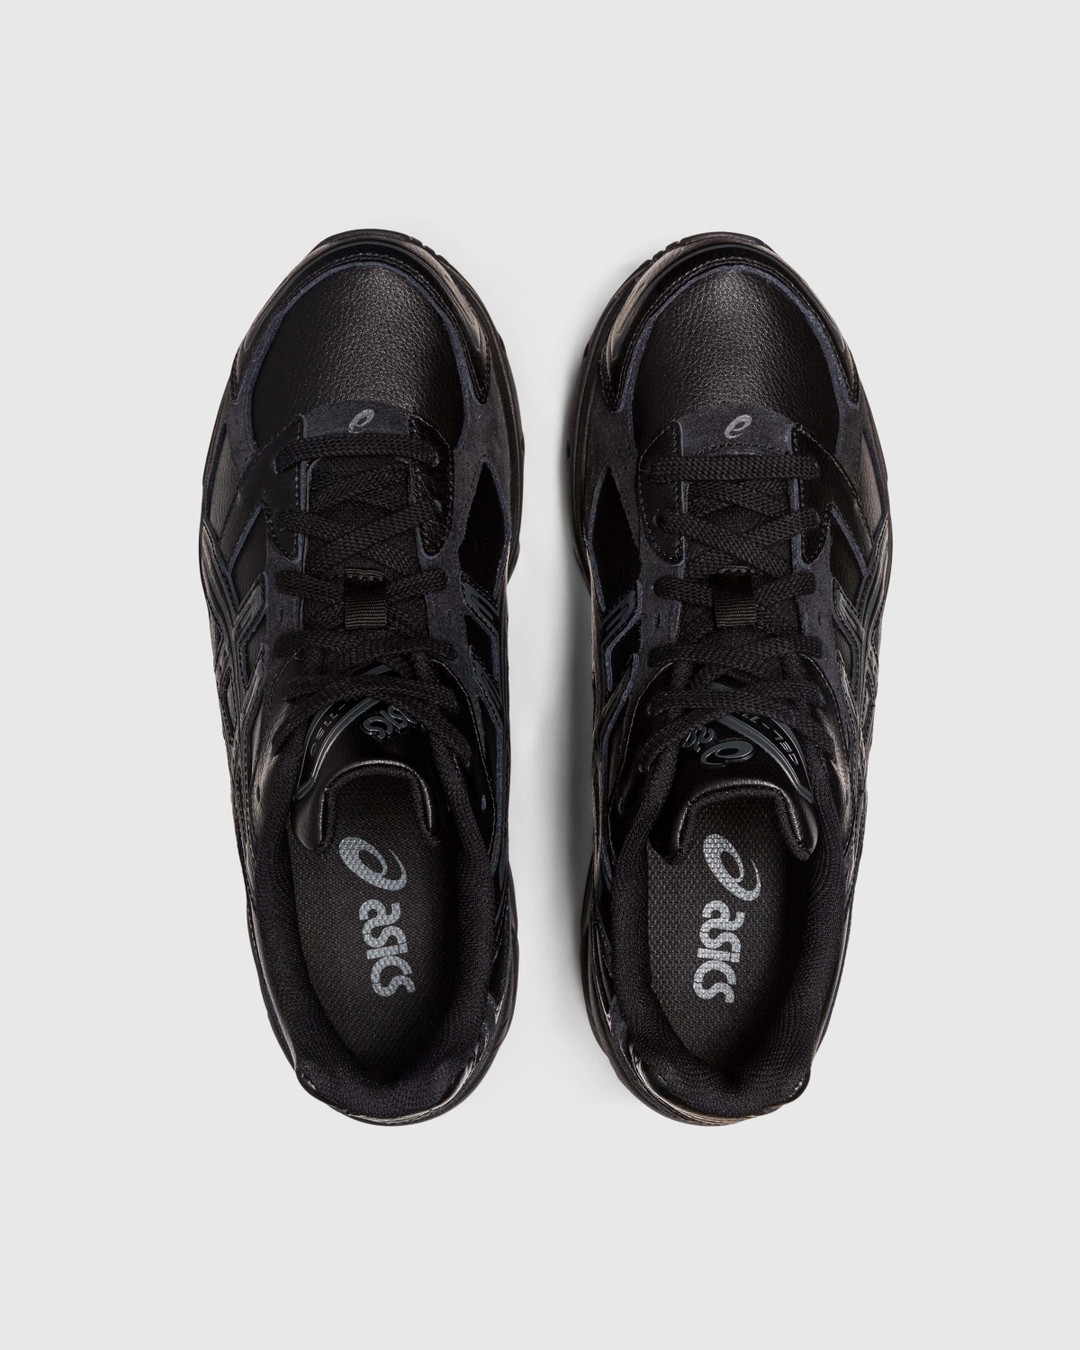 asics – GEL-1130 Black - Low Top Sneakers - Black - Image 5